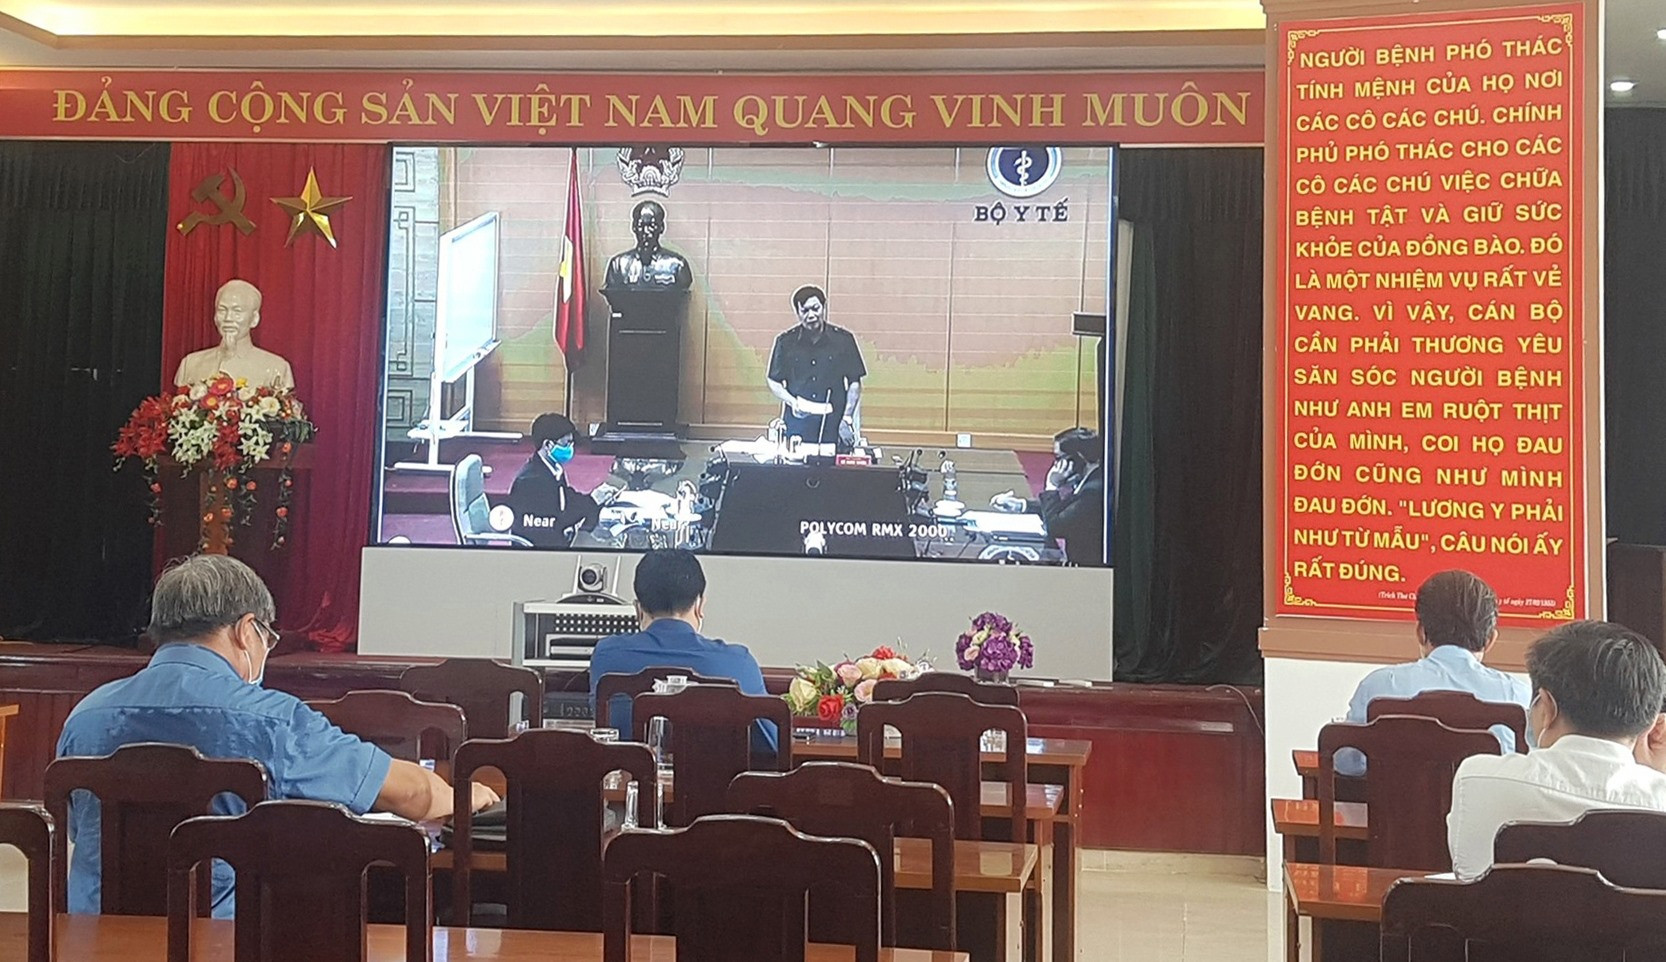 Đầu cầu Quảng Nam tại hội nghị trực tuyến sáng nay. Ảnh: D.L